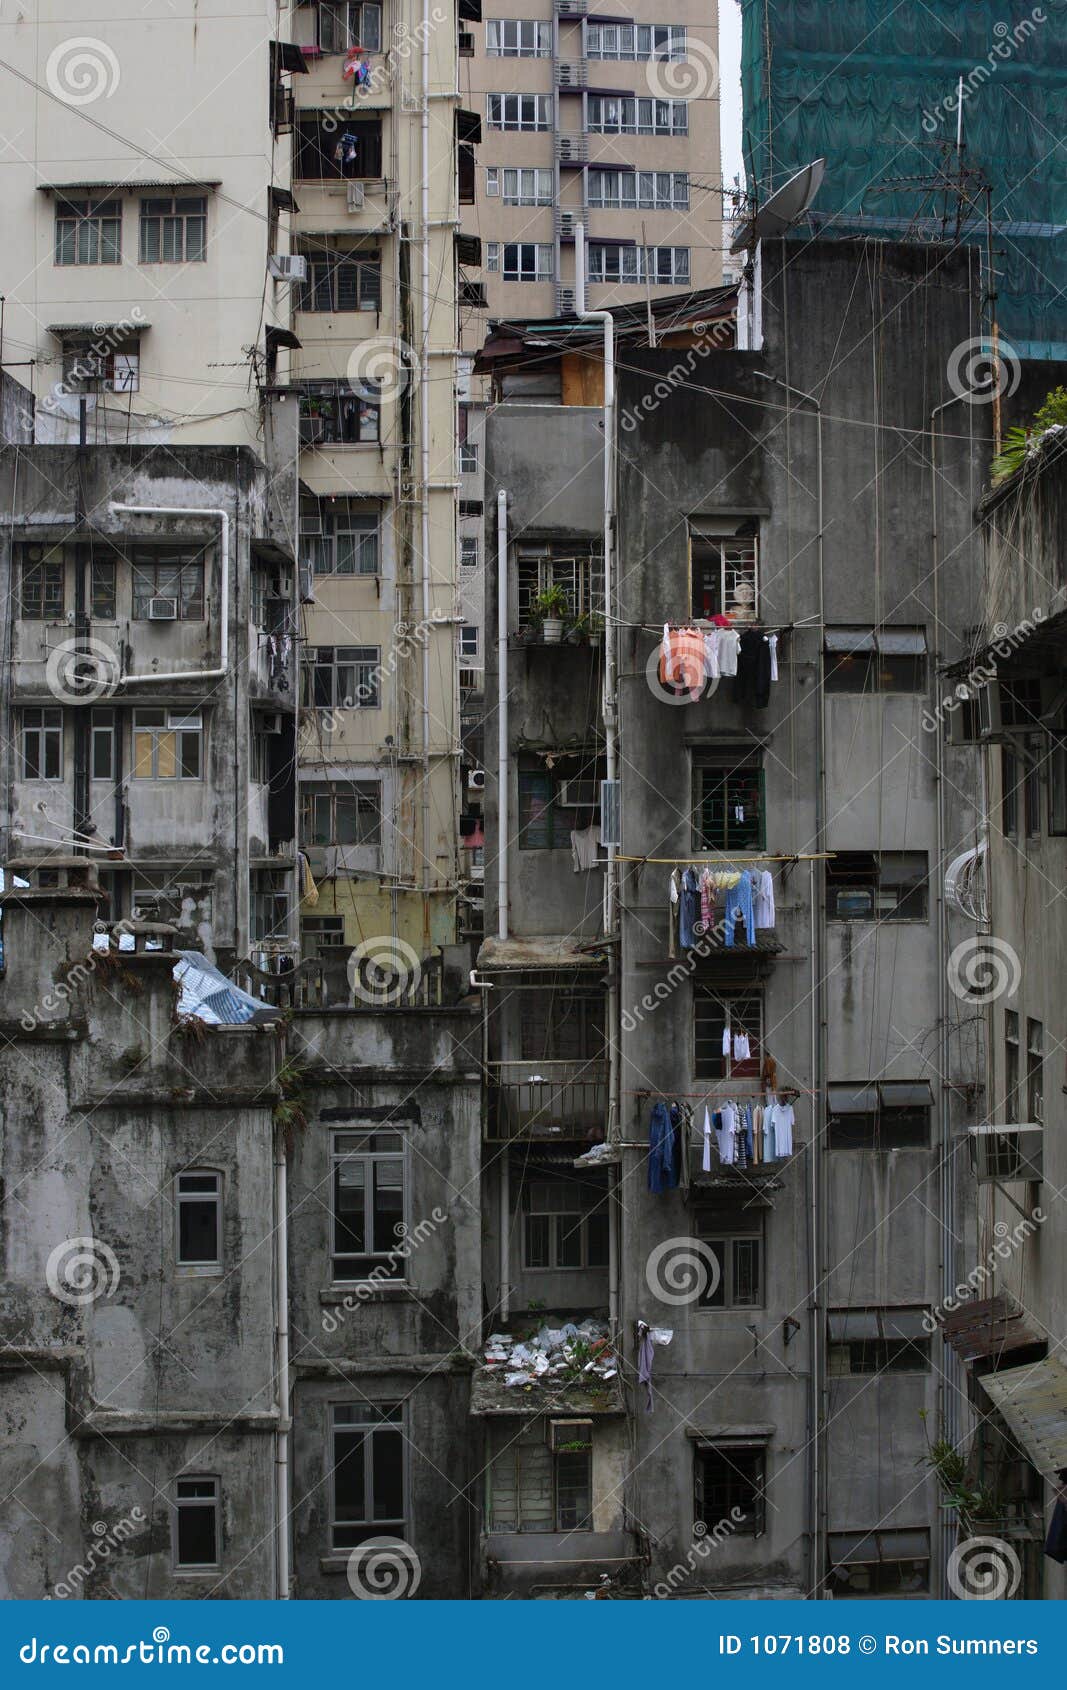 hong kong urban decay